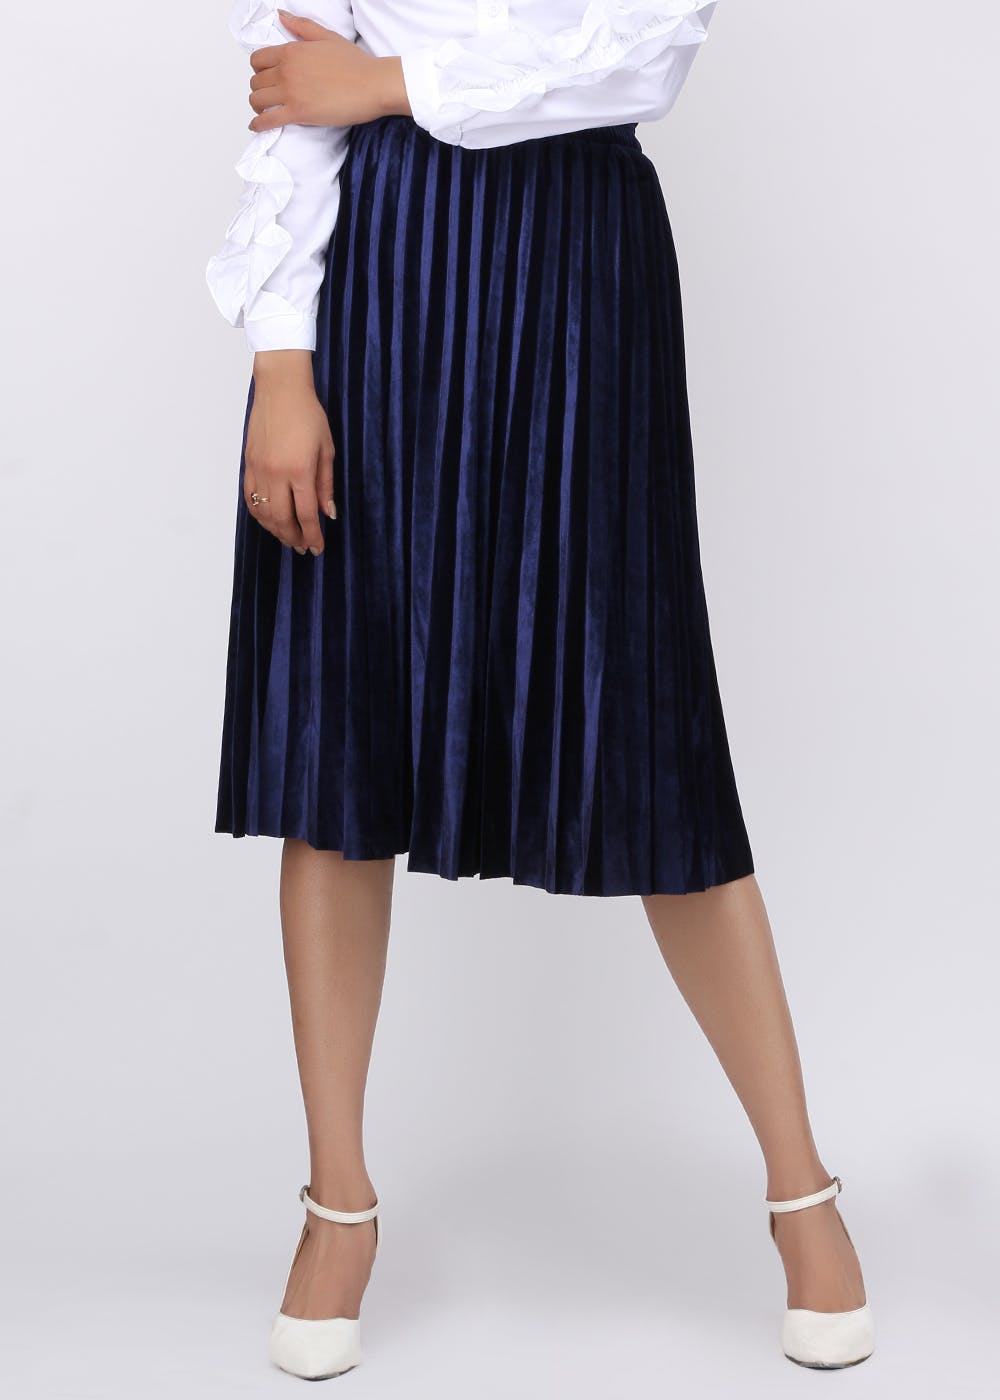 Get Velvet Pleated Navy Long Skirt at ₹ 1999 | LBB Shop